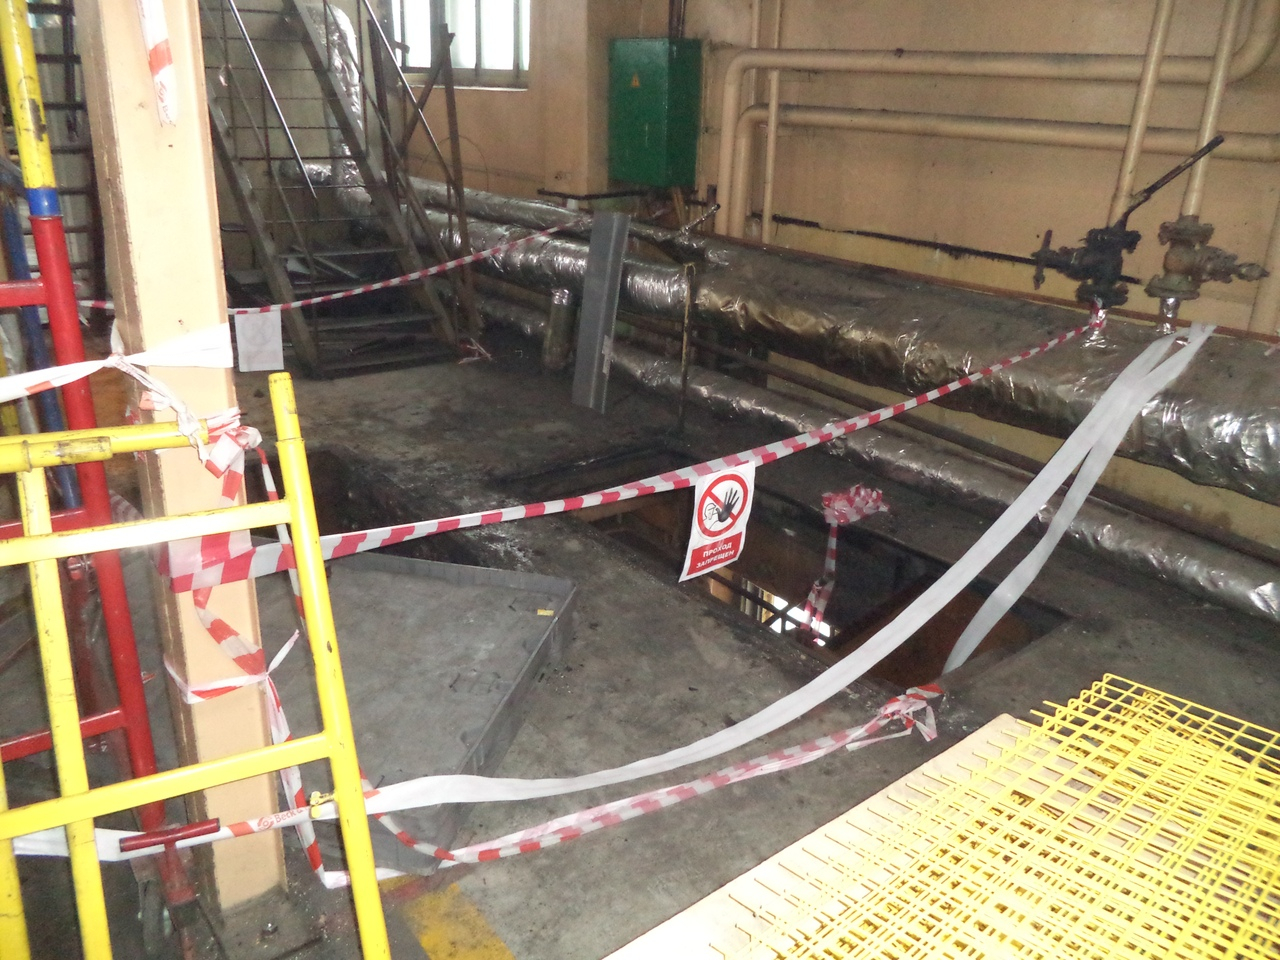 Следственный комитет опубликовал фото с места гибели рабочего на кировском заводе